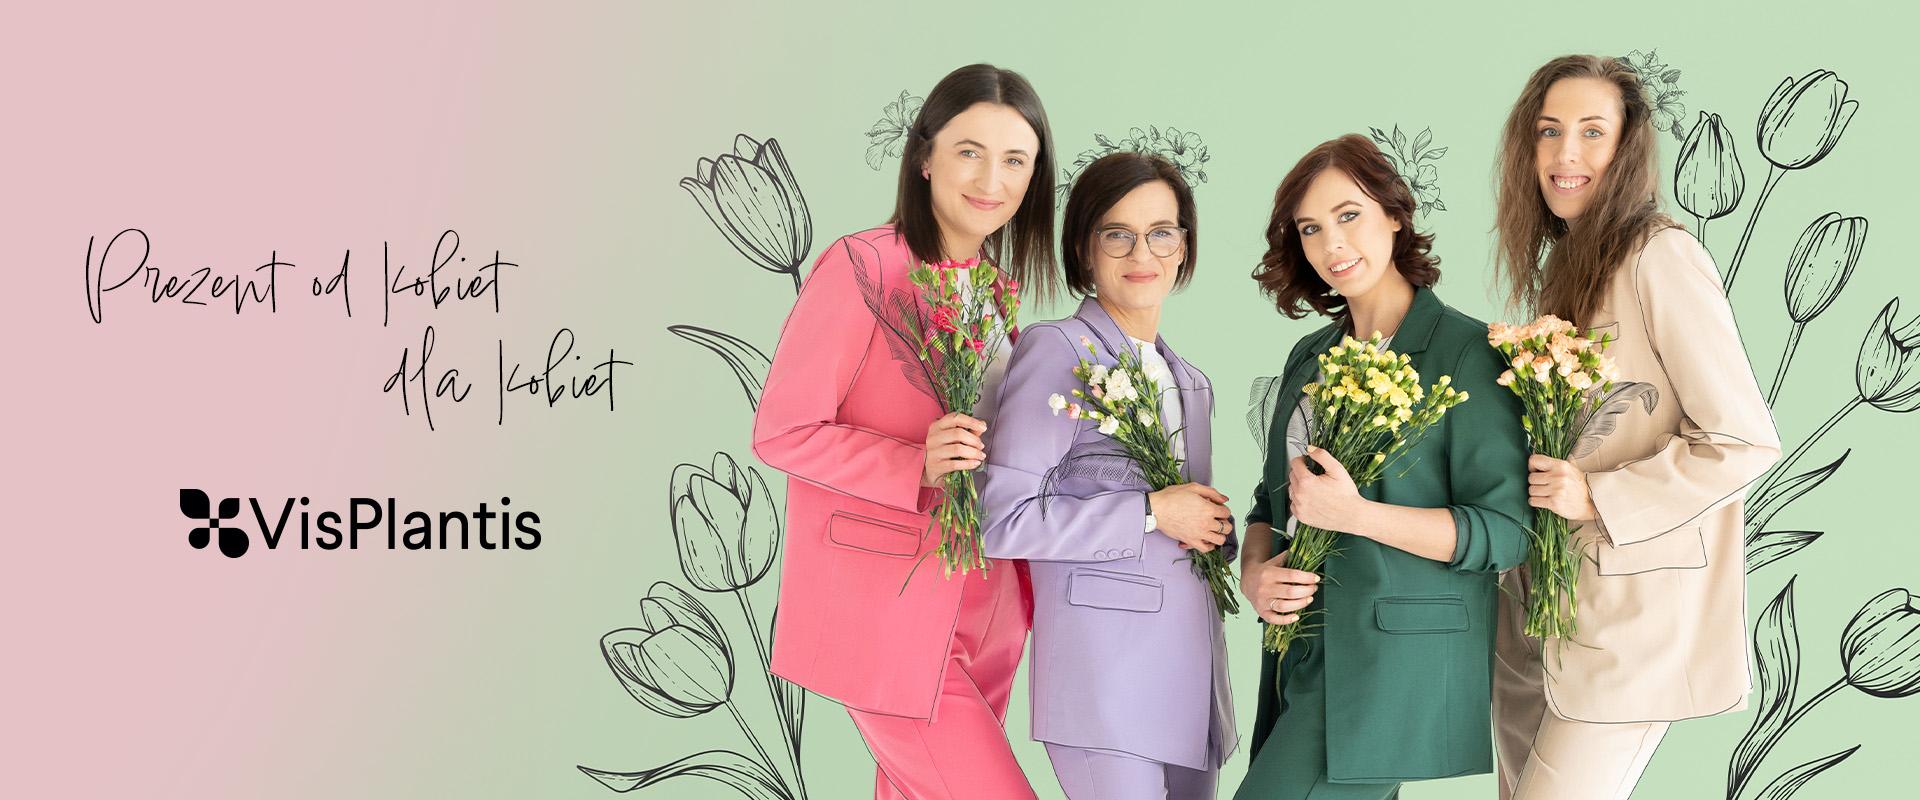 Vis Plantis celebruje Dzień Kobiet kampanią Prezent od Kobiet dla Kobiet